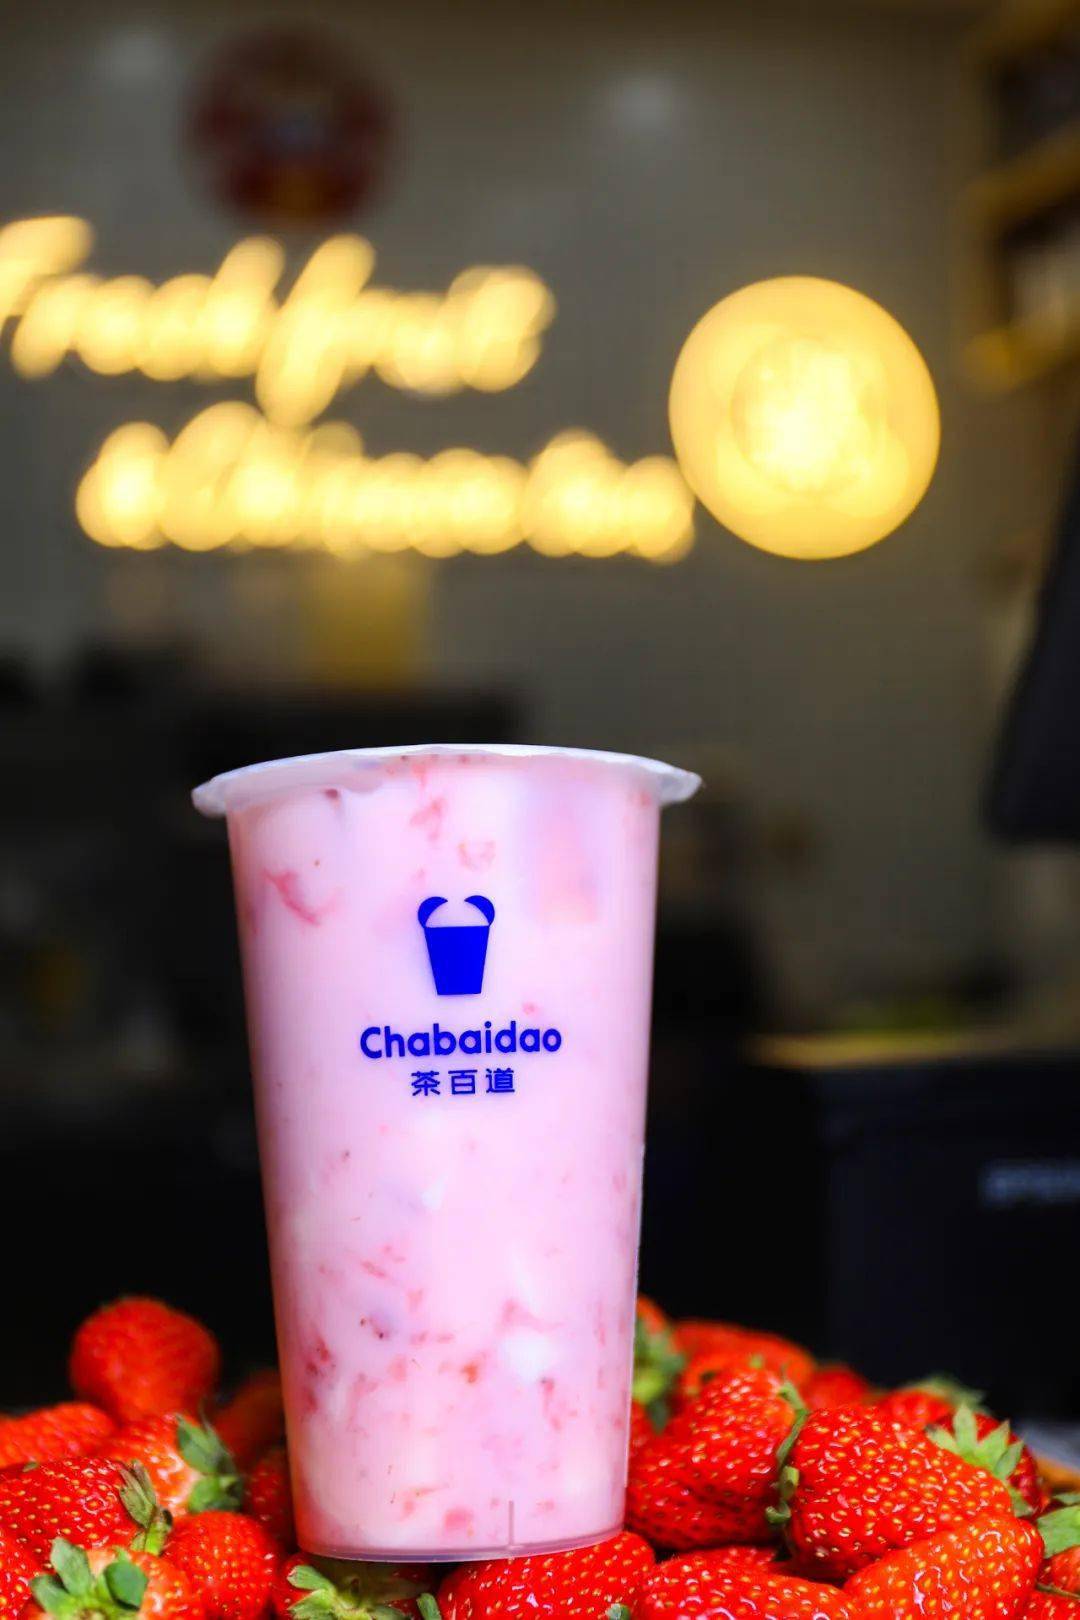 茶百道在春季非常合时宜地推出了草莓系列,这款草莓奶冻光看外表就会